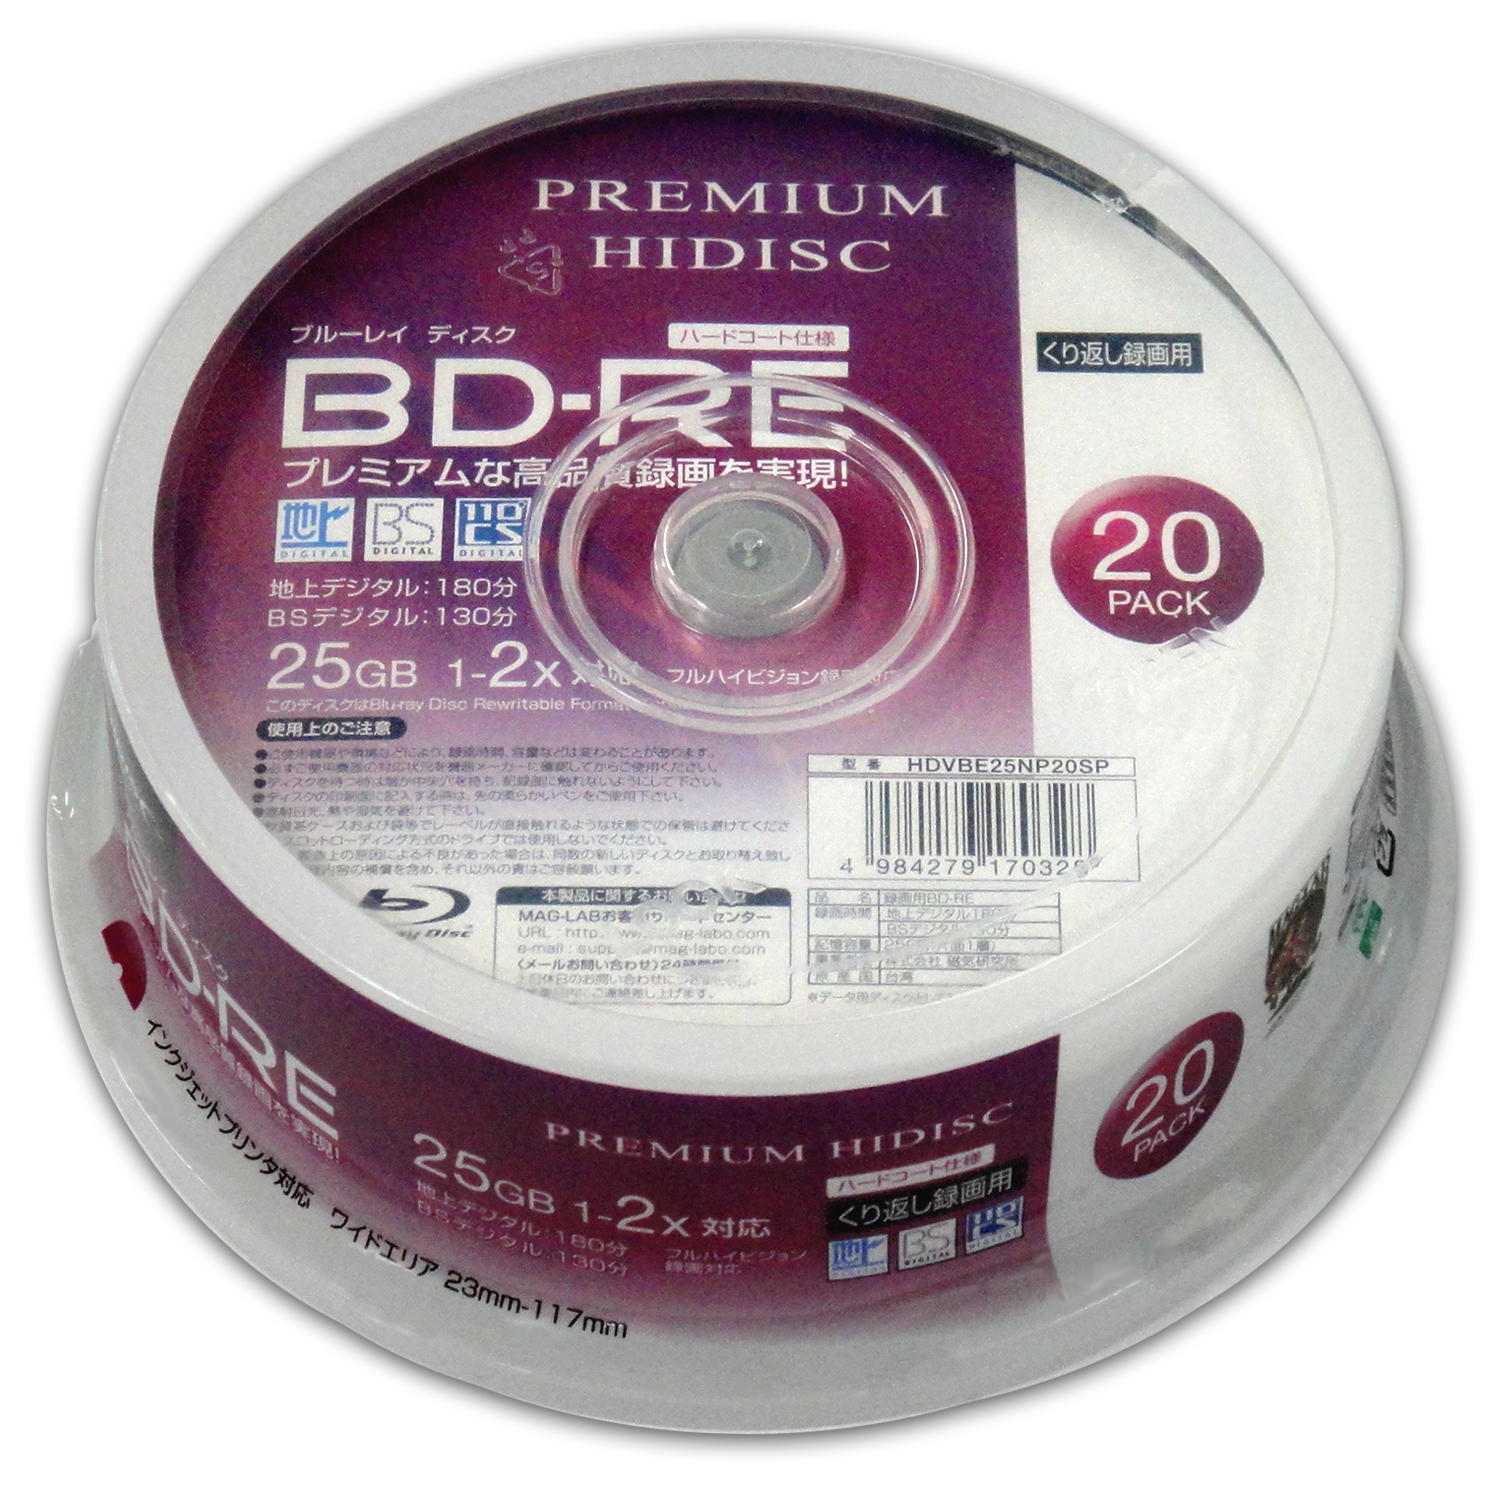 PREMIUM HIDISC  BD-RE くり返し録画 2倍速 25GB 20Pスピンドルケース